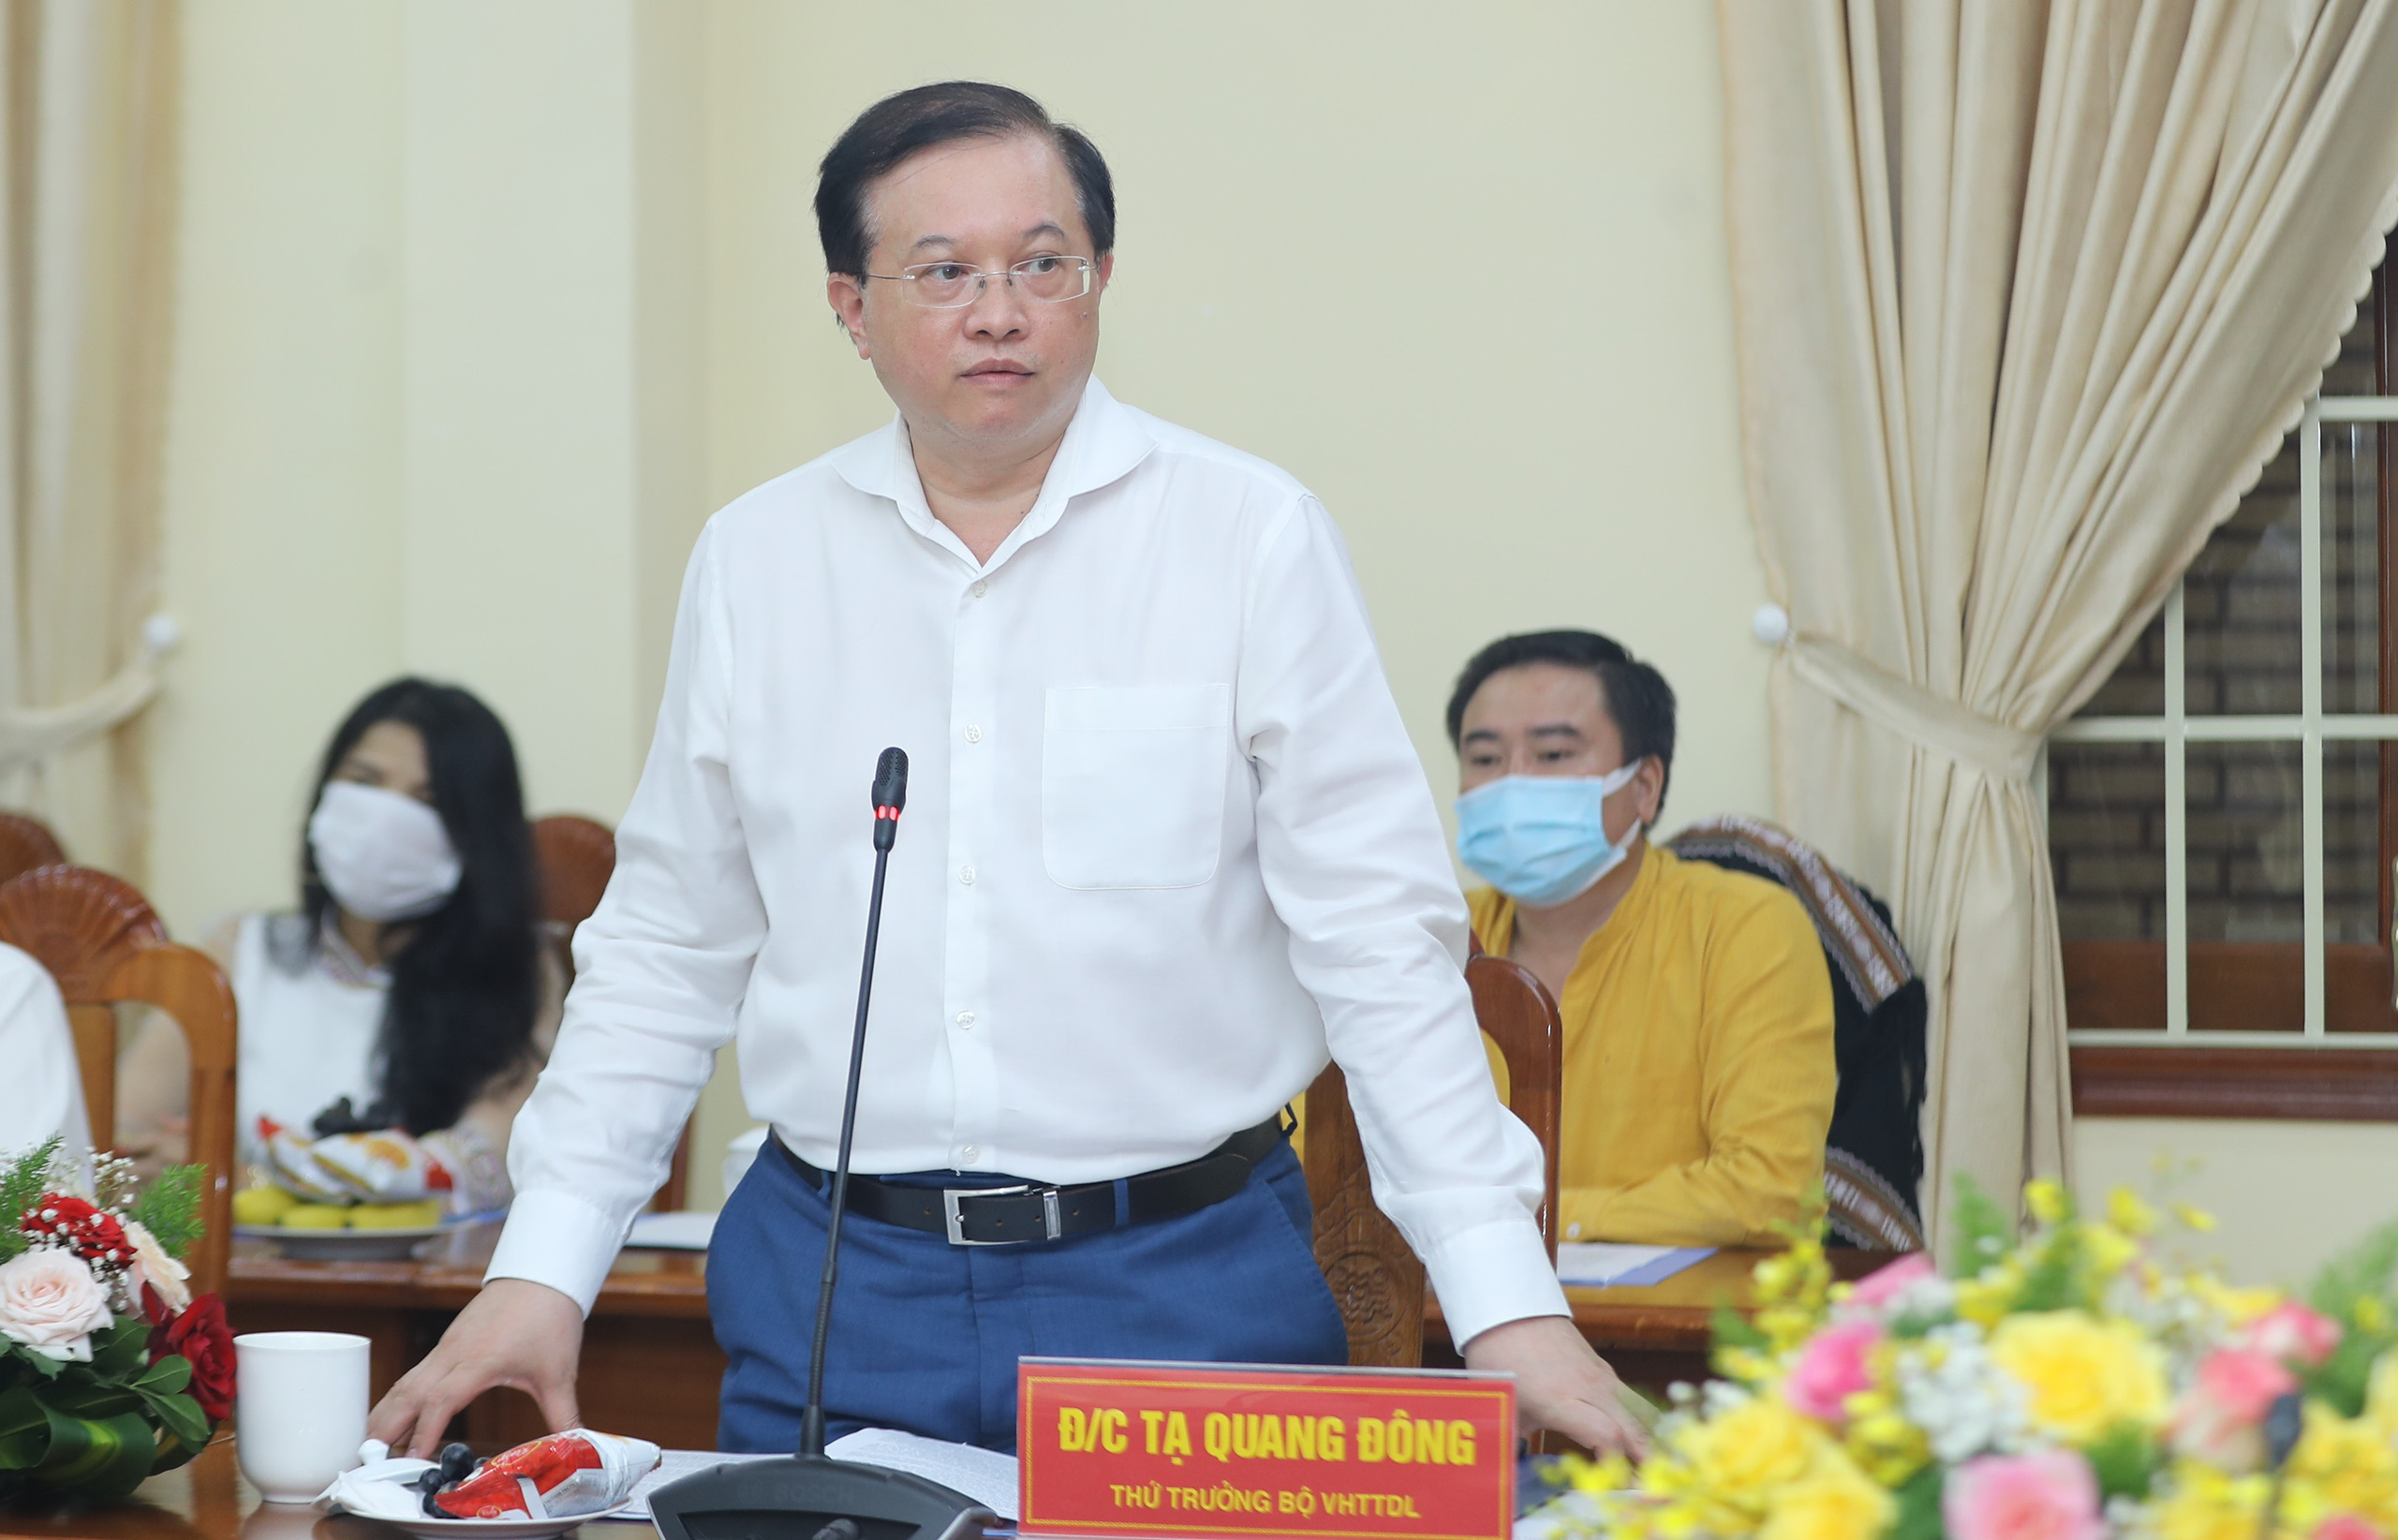 Bộ trưởng Nguyễn Văn Hùng: “Kon Tum có quang cảnh đẹp, sao không mạnh dạn đặt ước mơ trở thành trung tâm hội nghị của khu vực miền Trung-Tây Nguyên” - Ảnh 4.